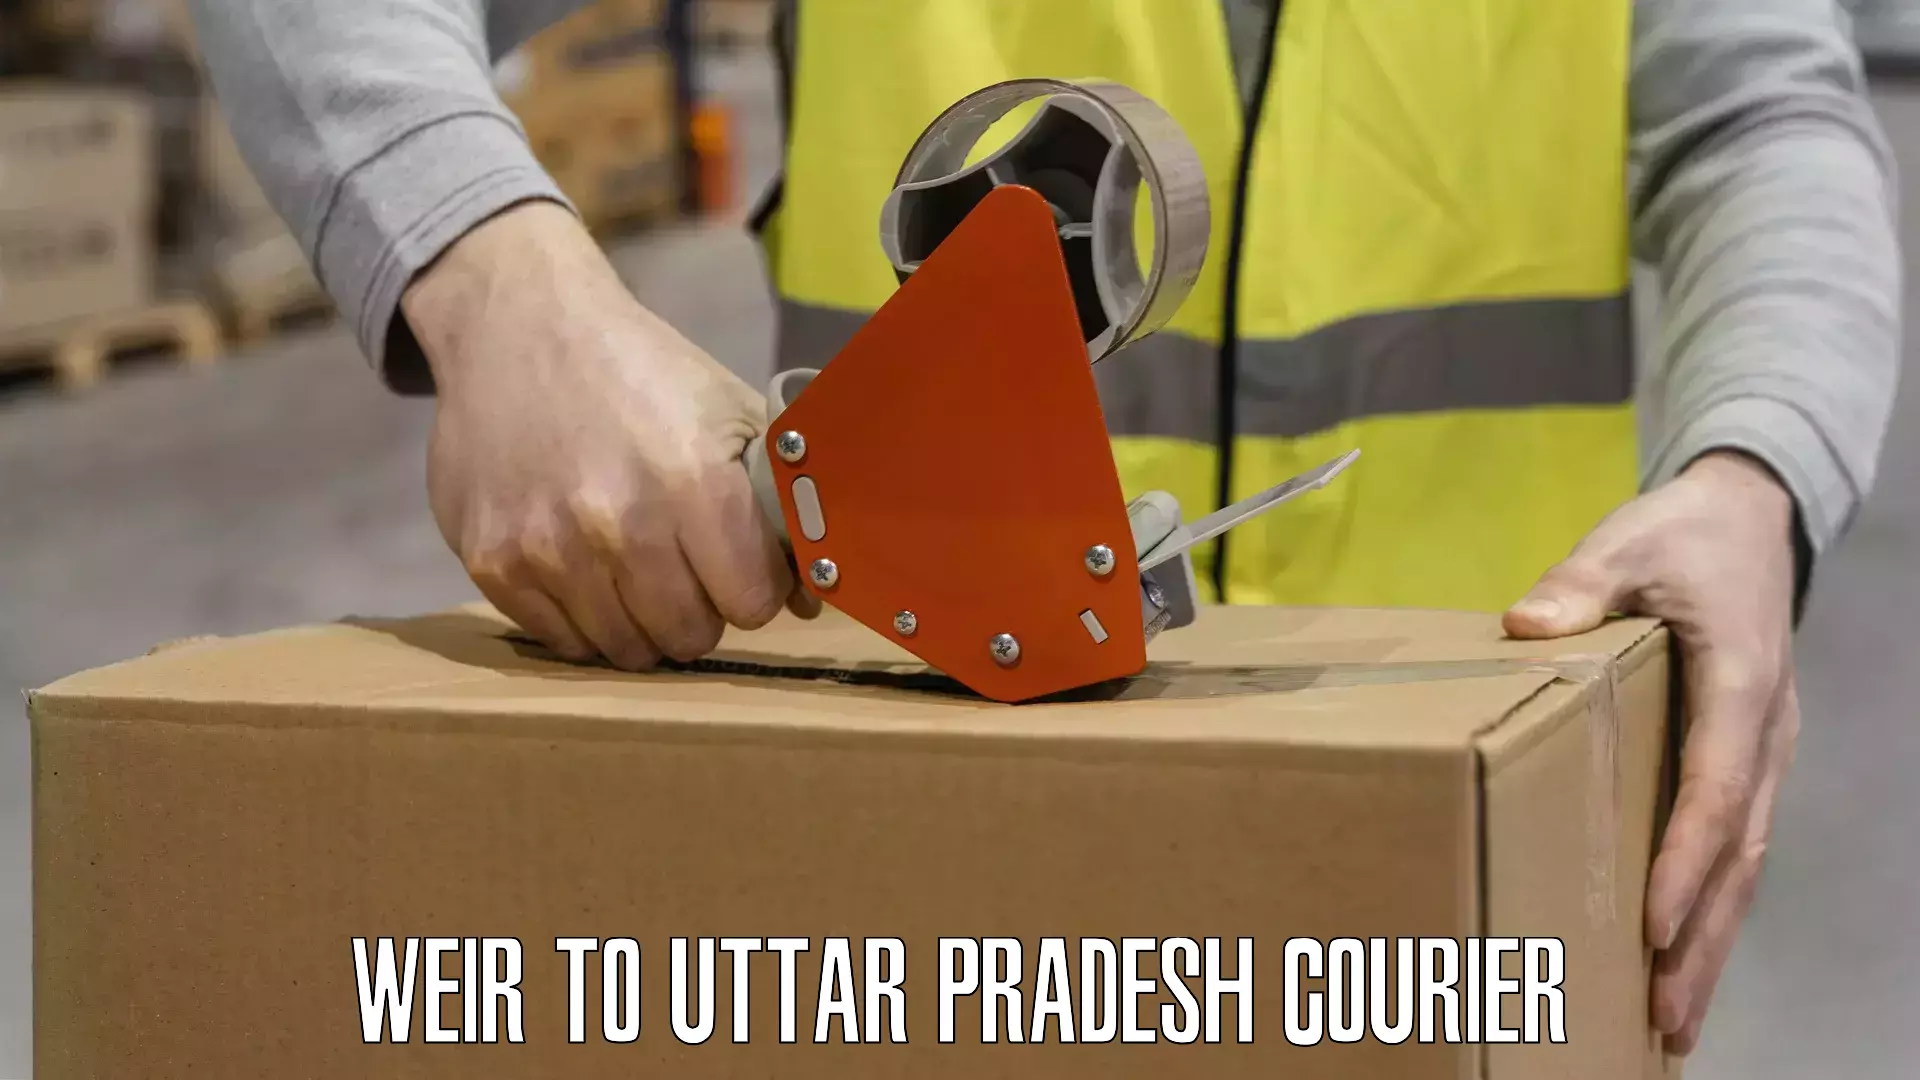 International courier networks Weir to Uttar Pradesh